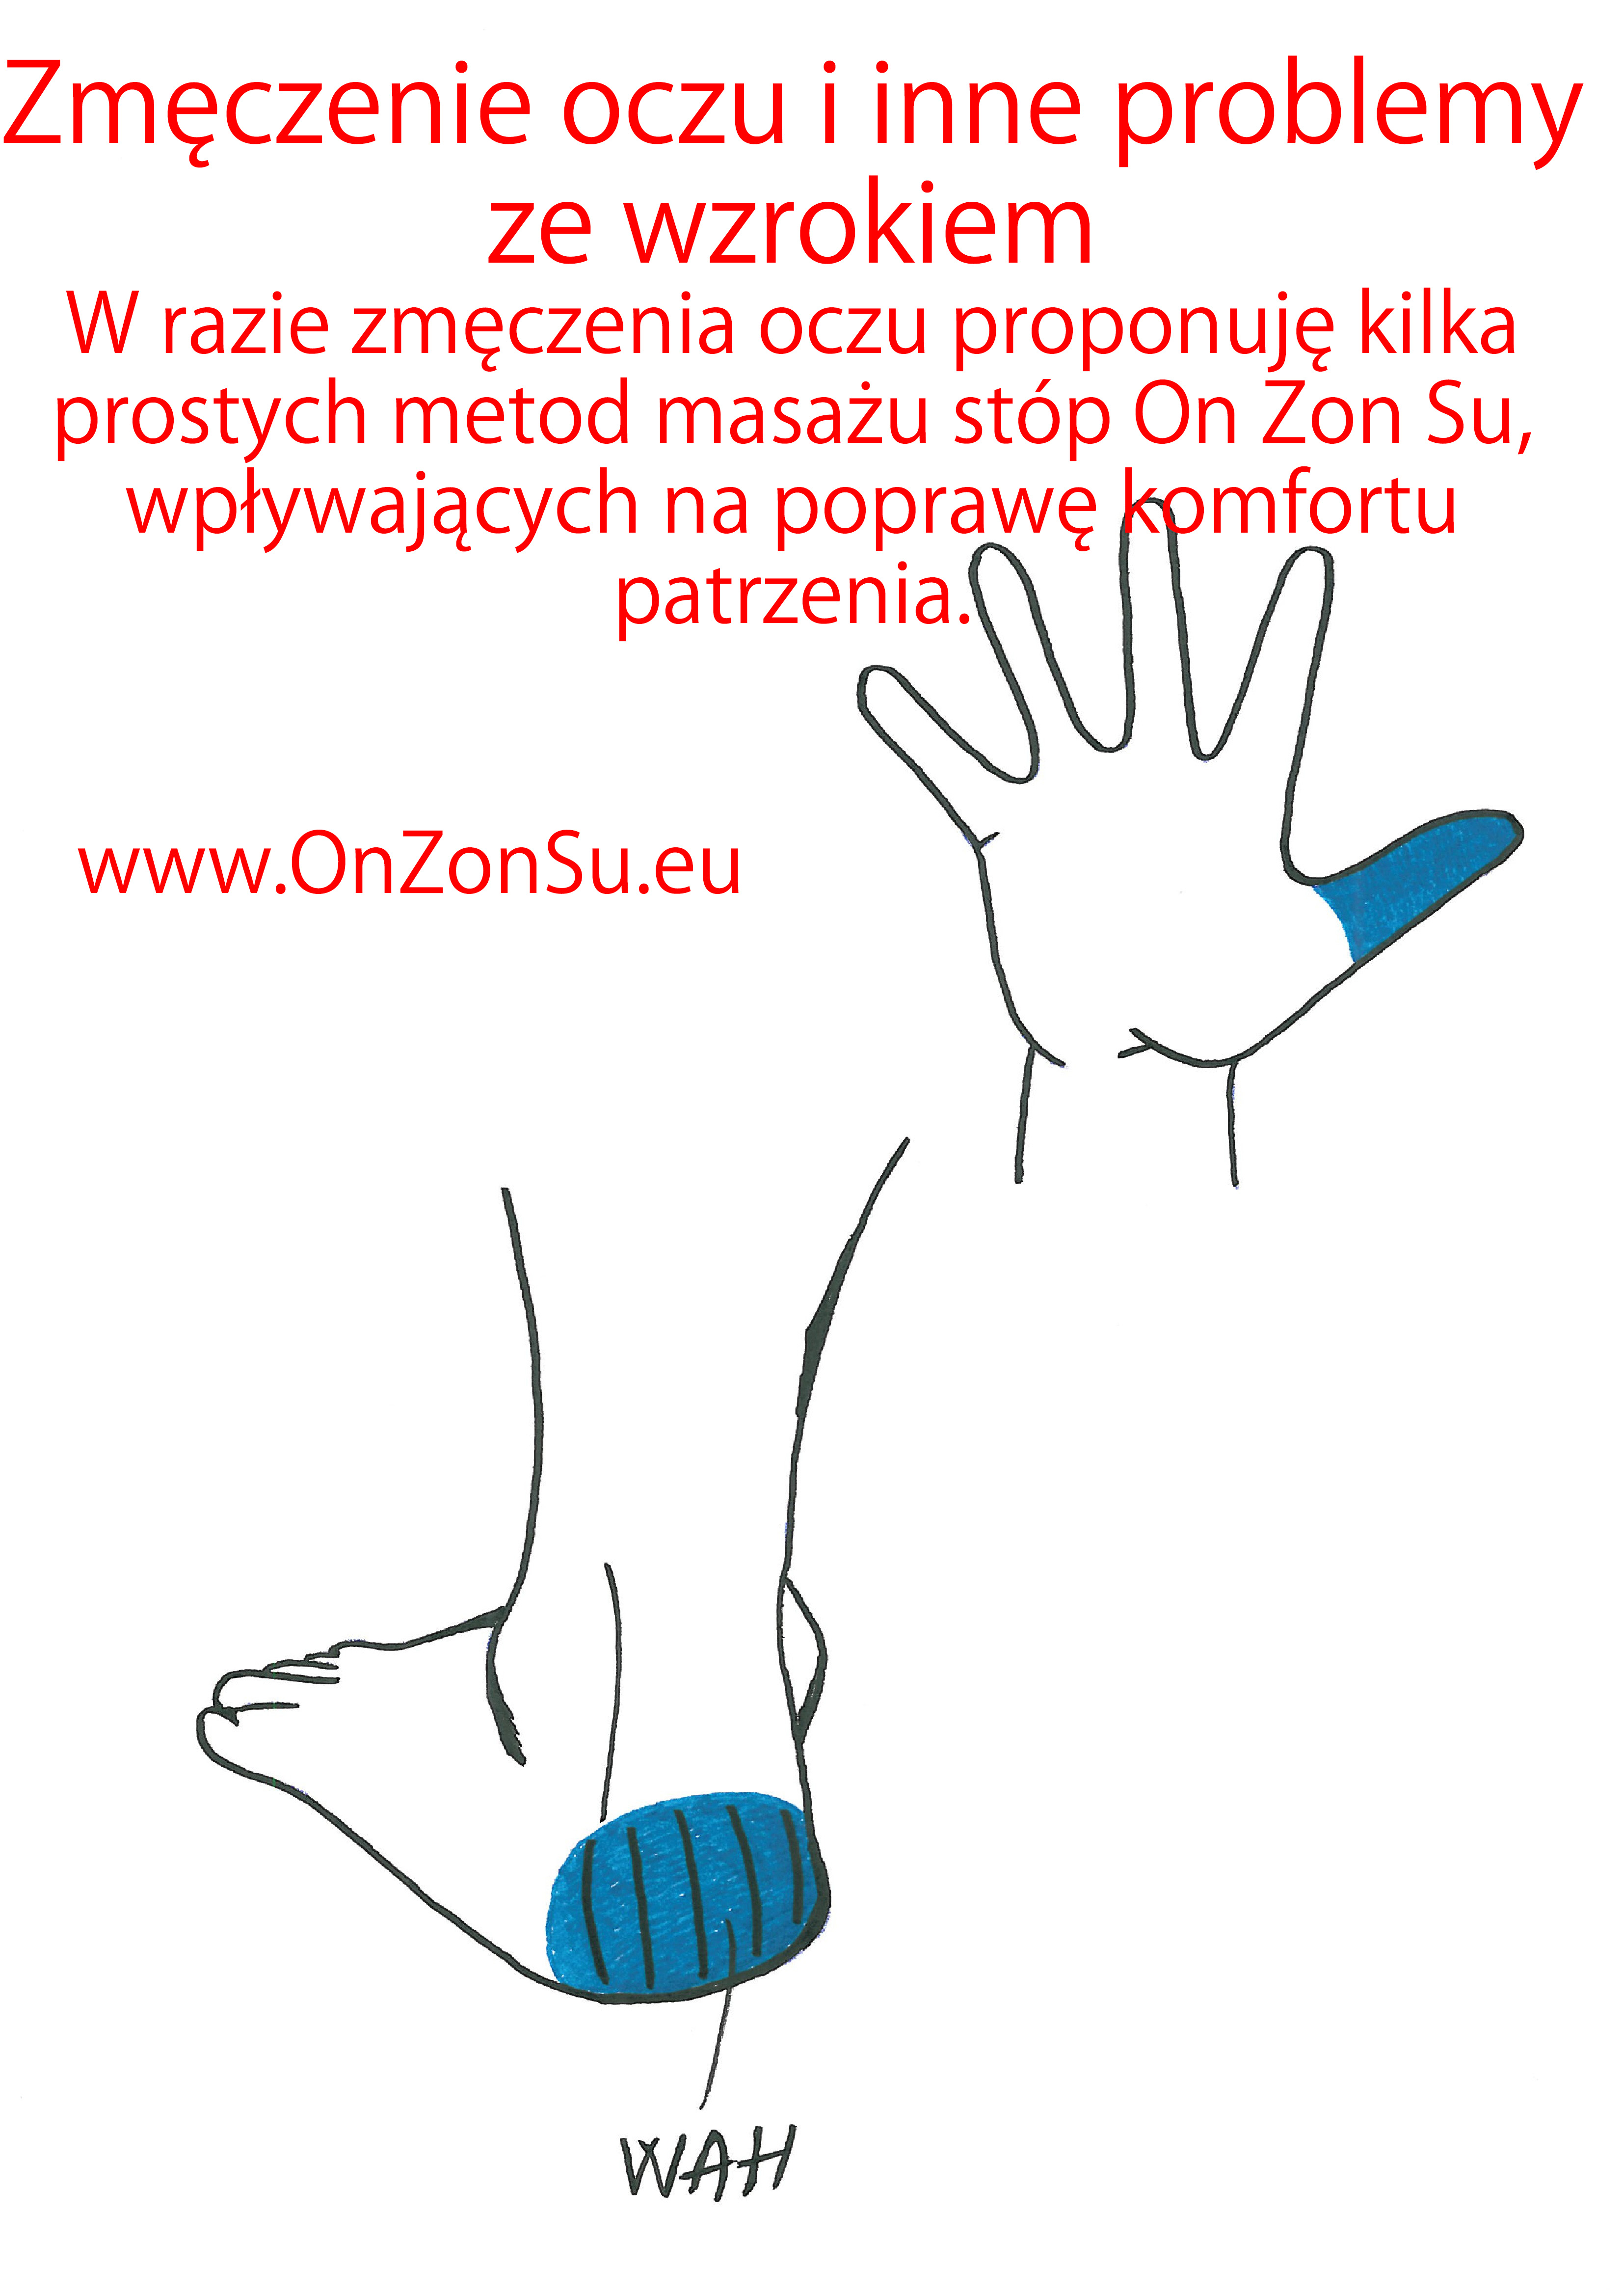 Kurs masażu stóp On Zon Su, Szkolenia refleksologii stóp - Oczy, zmęczenie i inne problemy ze wzrokiem gora_wah_duze_MEM.jpg